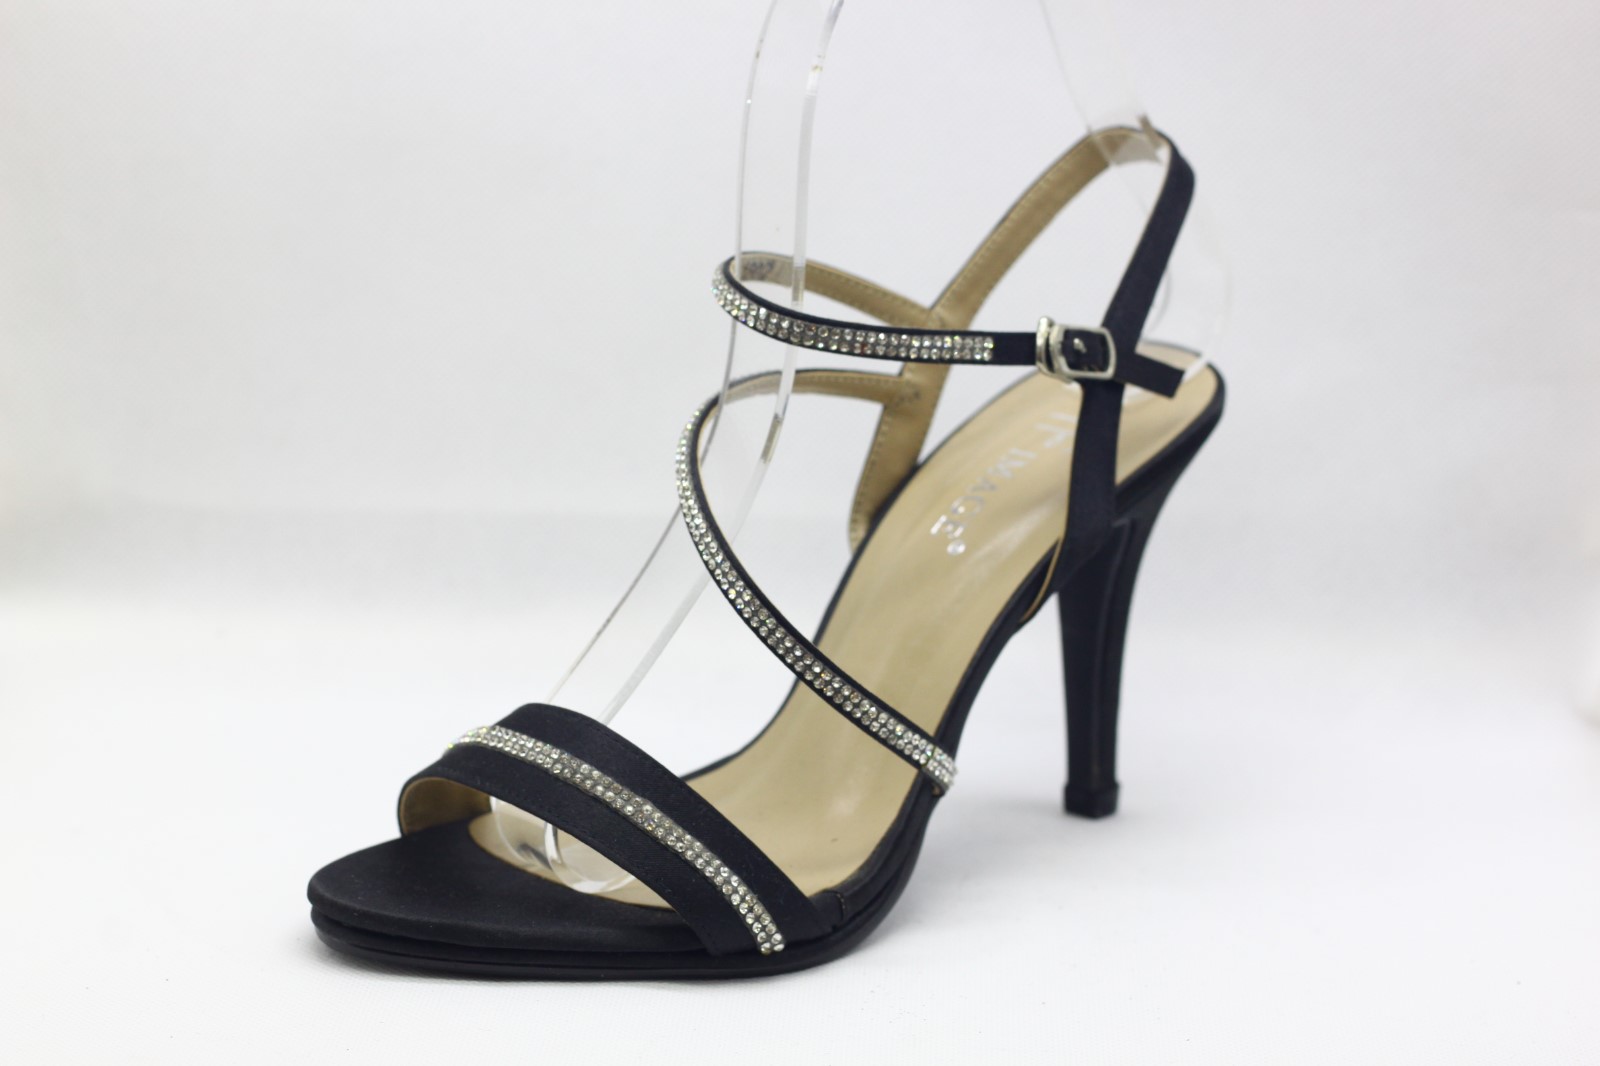 2.8 inch heels